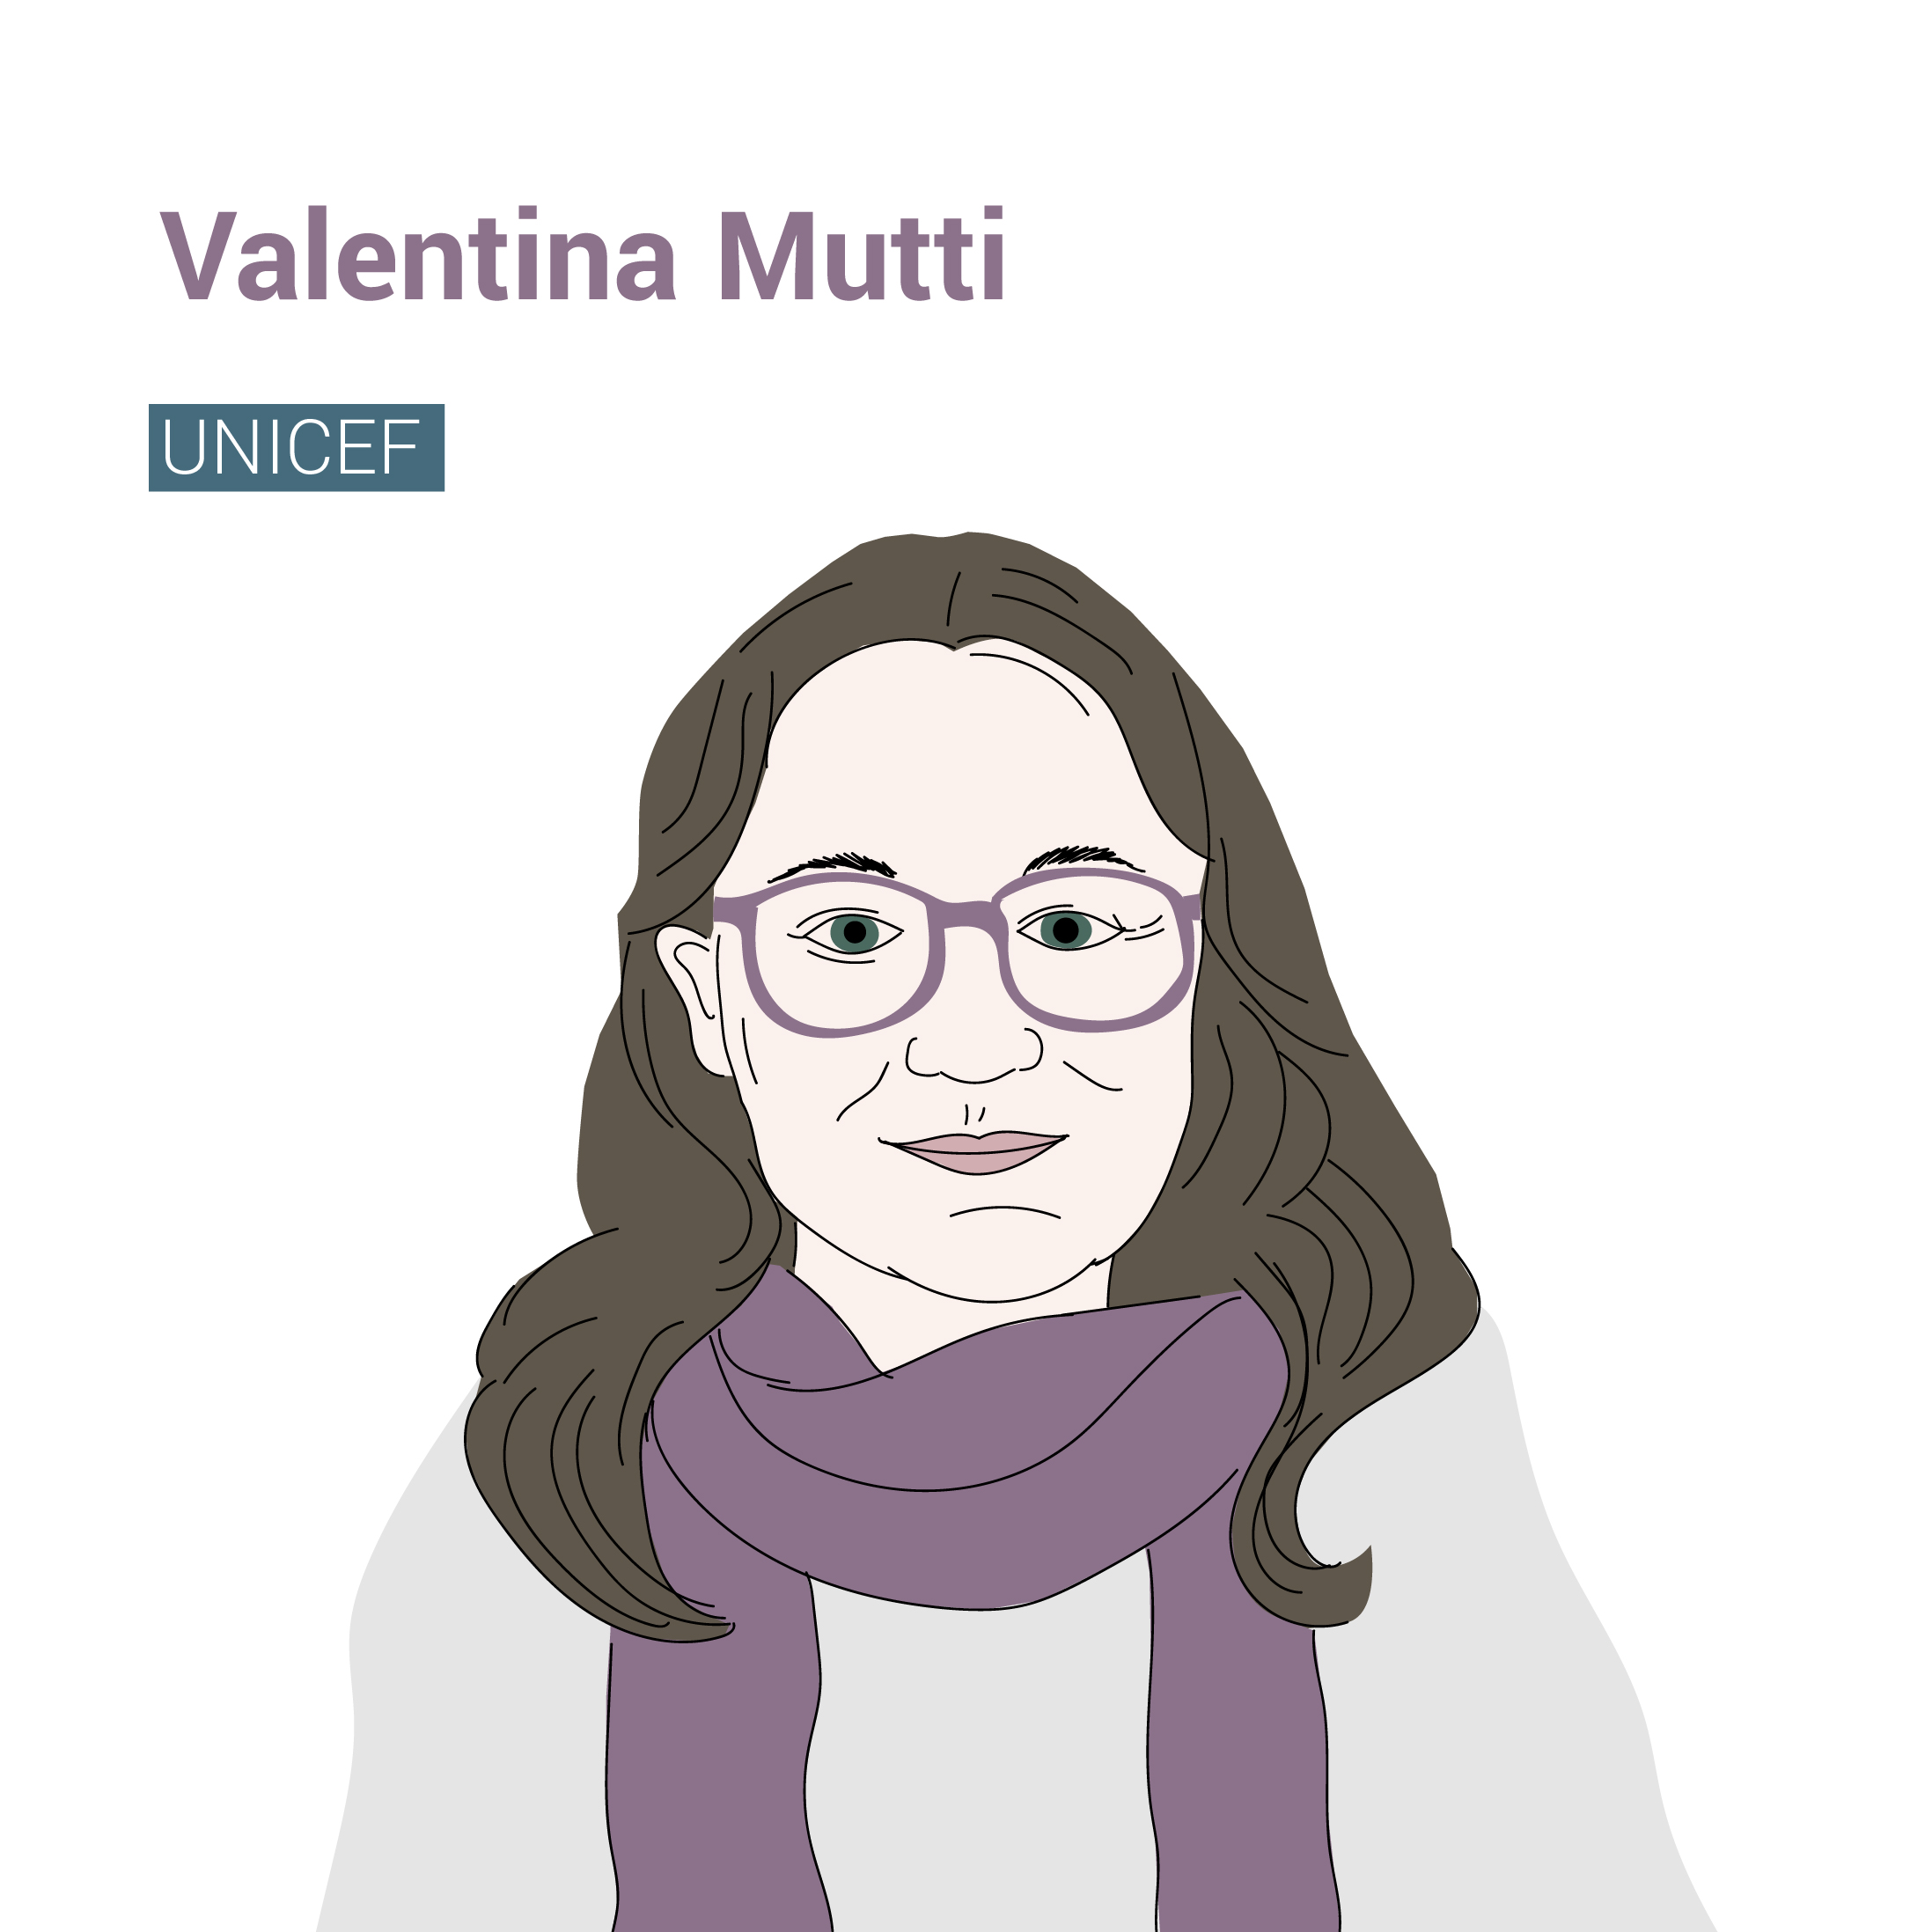 Valentina Mutti